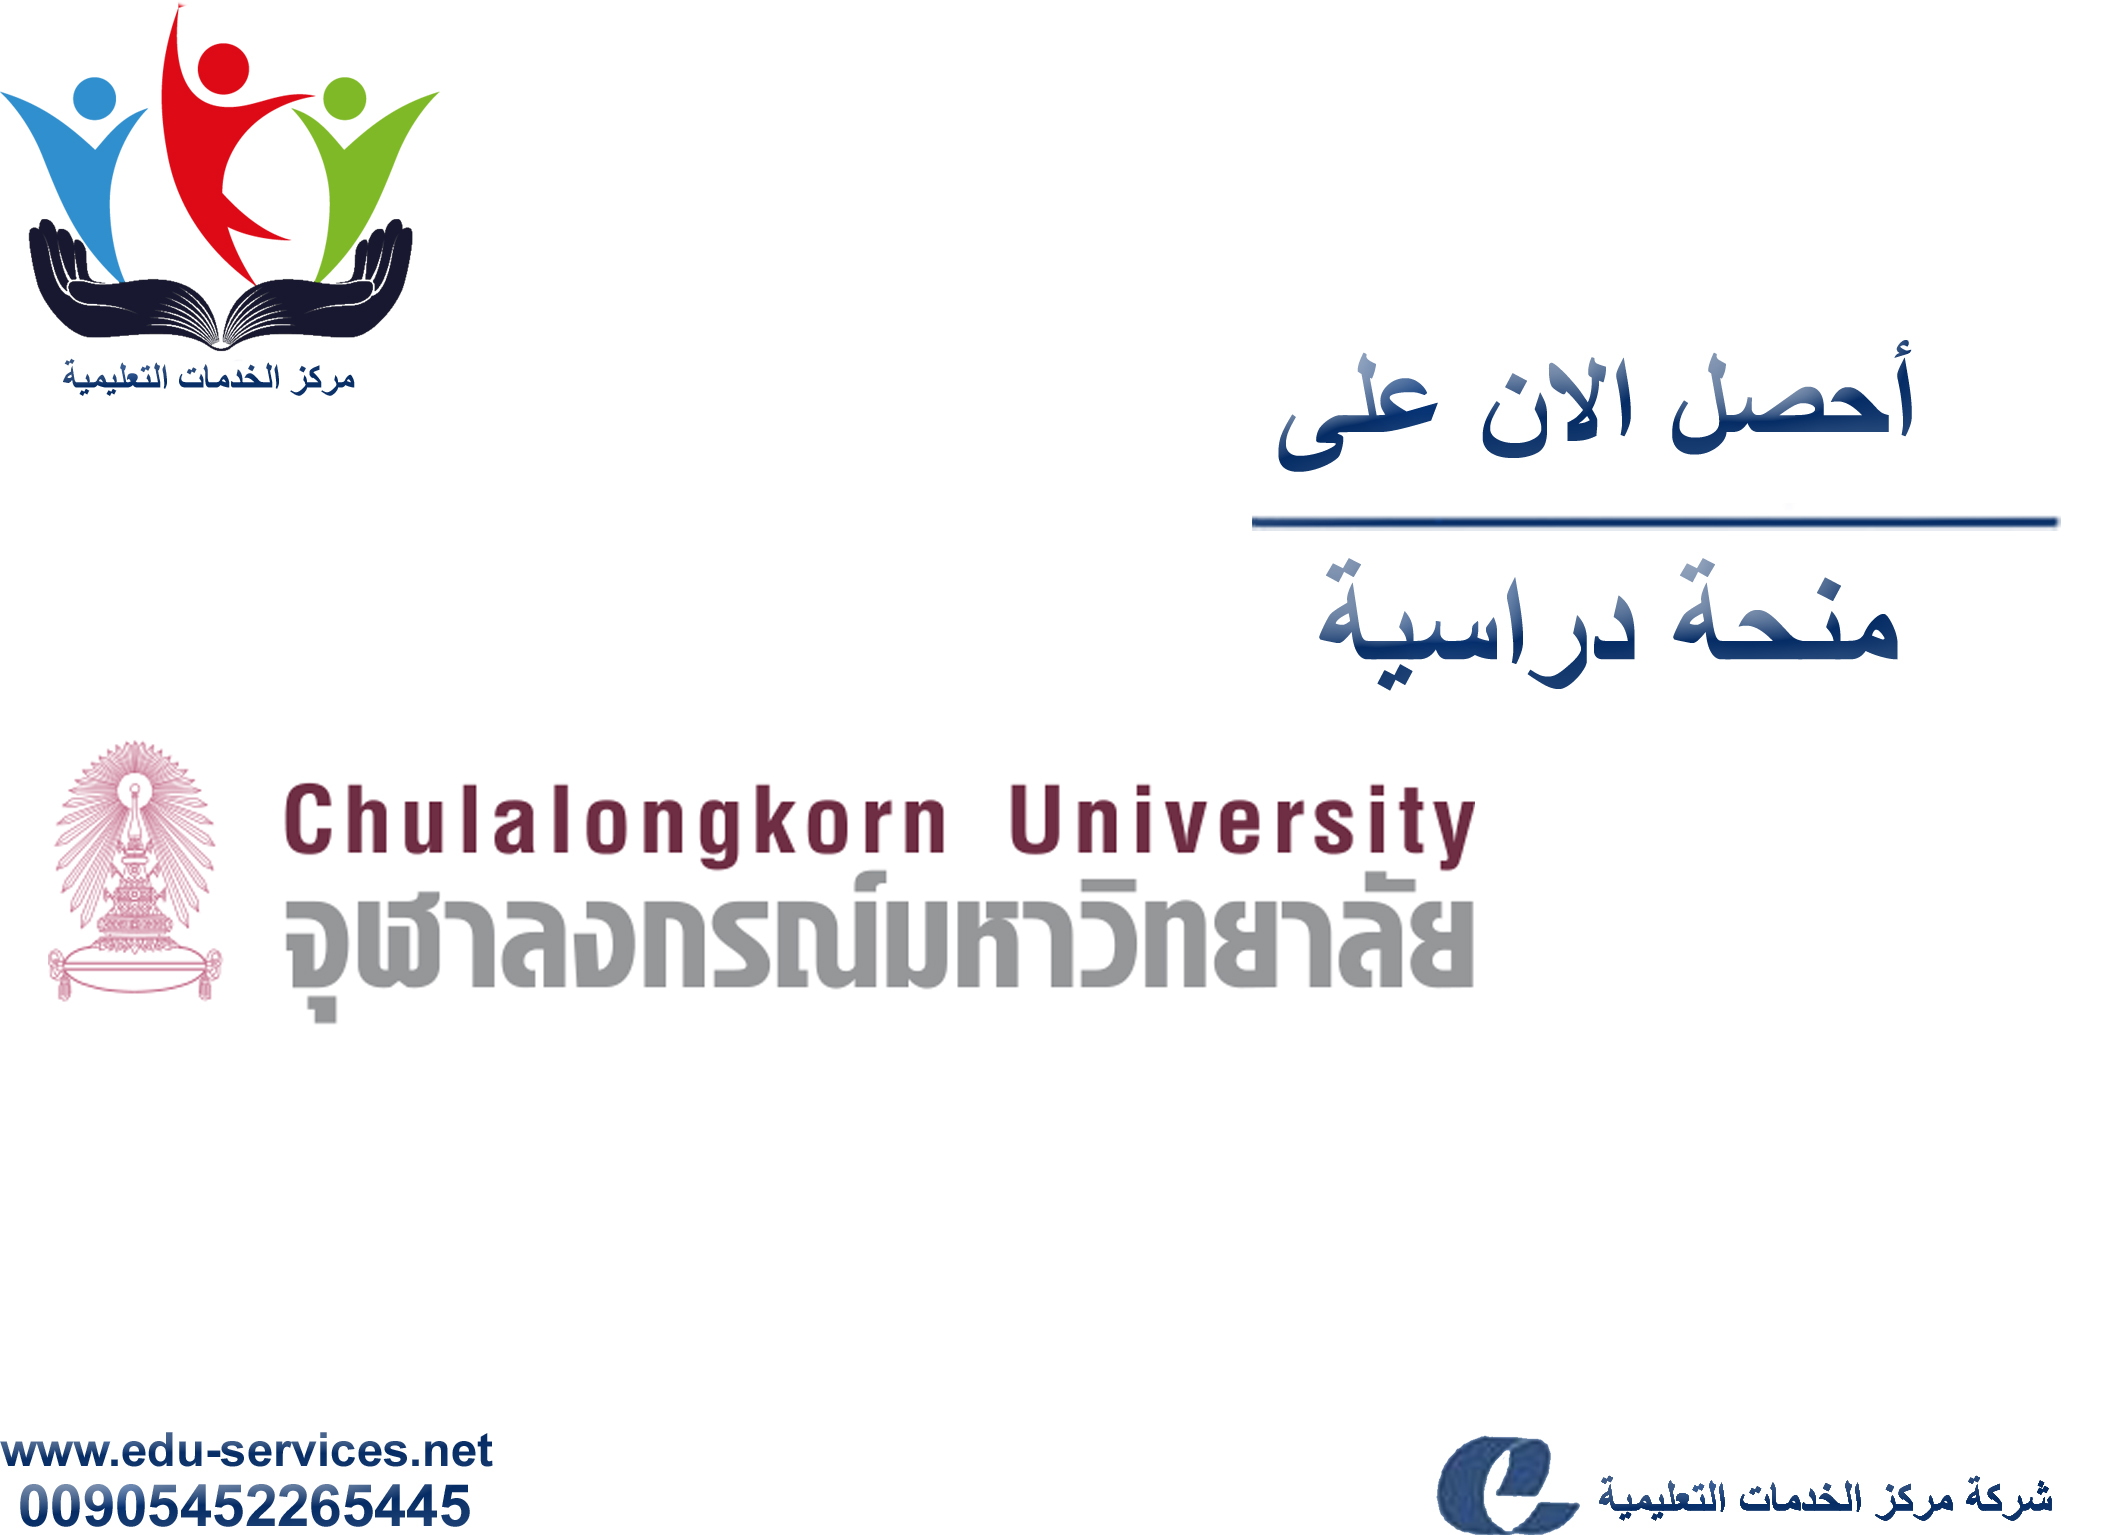 منح دراسية لدرجة البكالوريوس من CU في تايلاند للعام 2018-2019